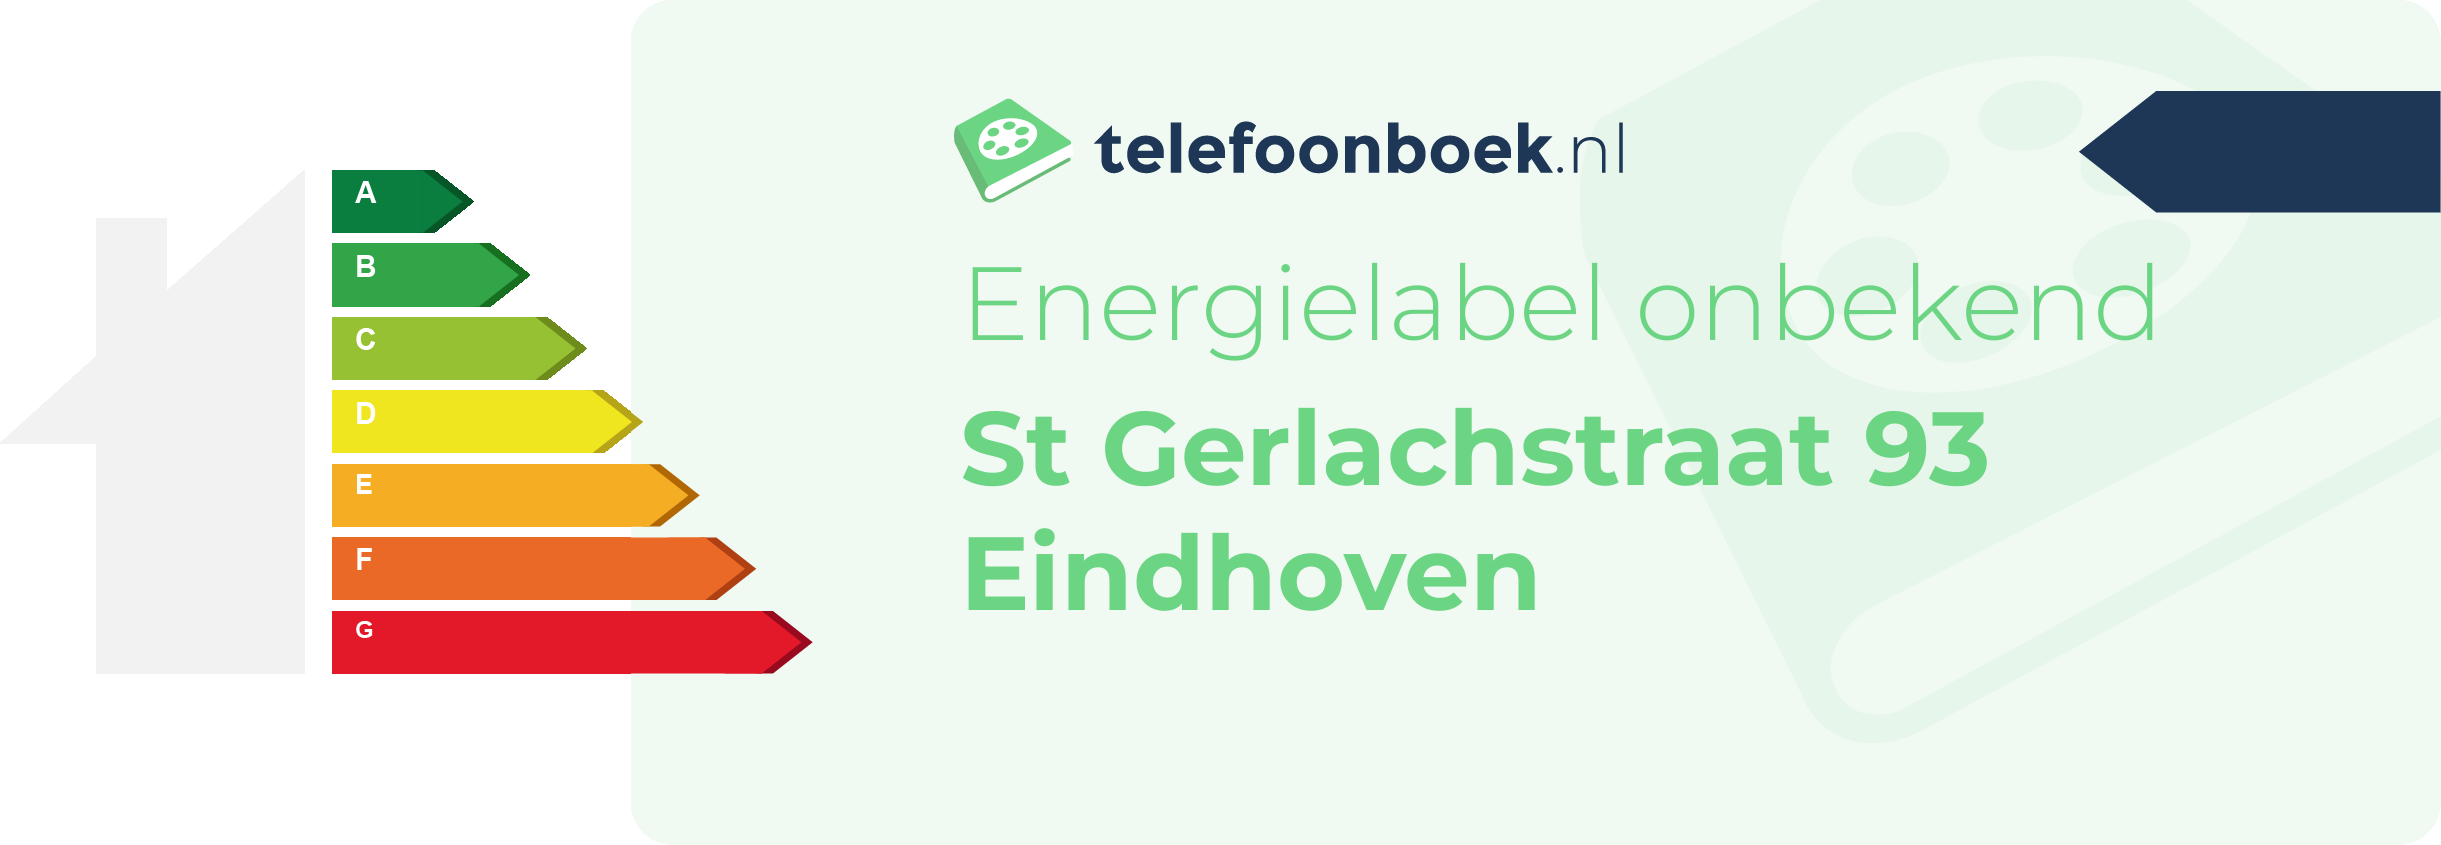 Energielabel St Gerlachstraat 93 Eindhoven